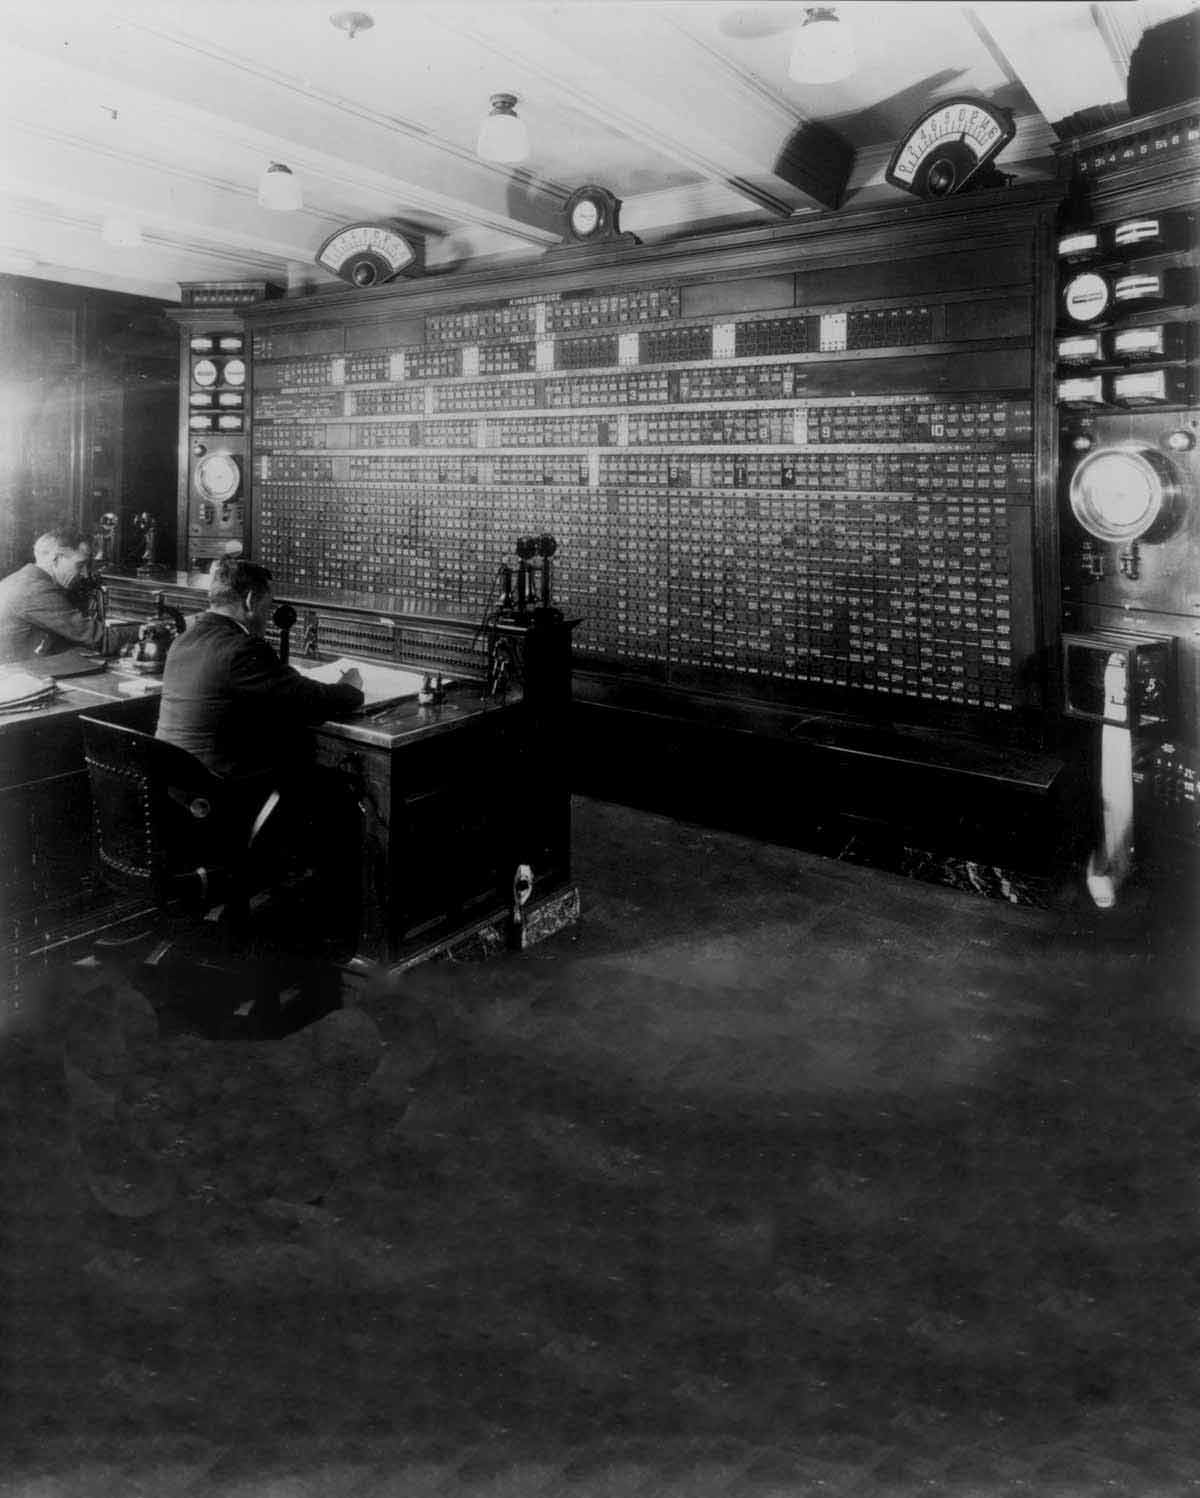 Fotografía en blanco y negro de dos trabajadores sentados observando una estación de monitoreo.